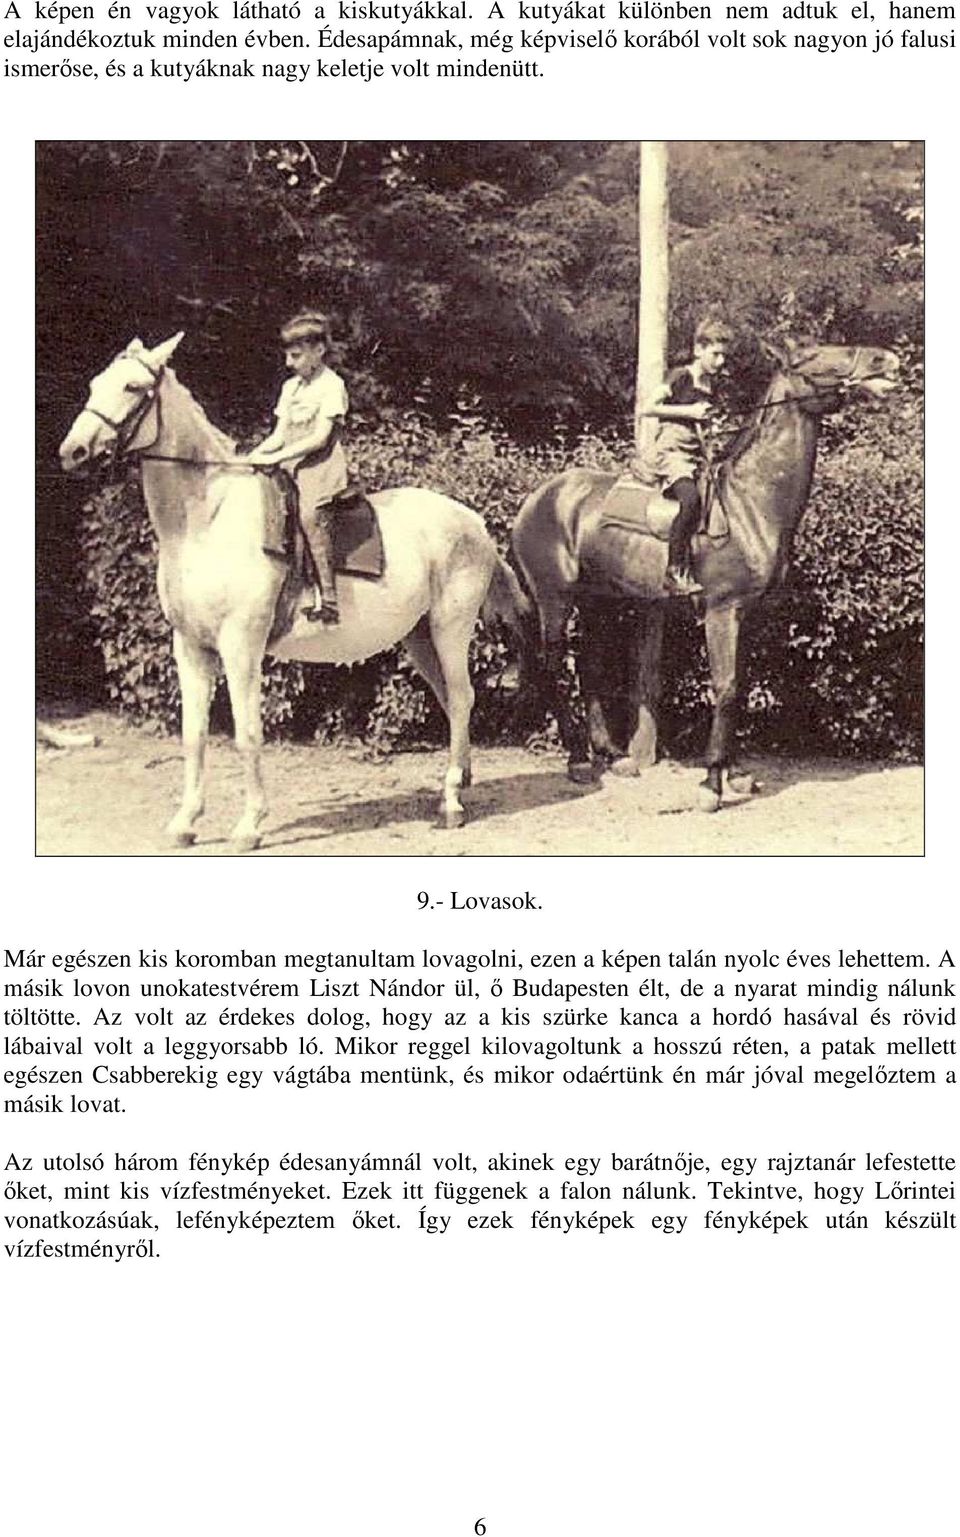 Már egészen kis koromban megtanultam lovagolni, ezen a képen talán nyolc éves lehettem. A másik lovon unokatestvérem Liszt Nándor ül, ı Budapesten élt, de a nyarat mindig nálunk töltötte.